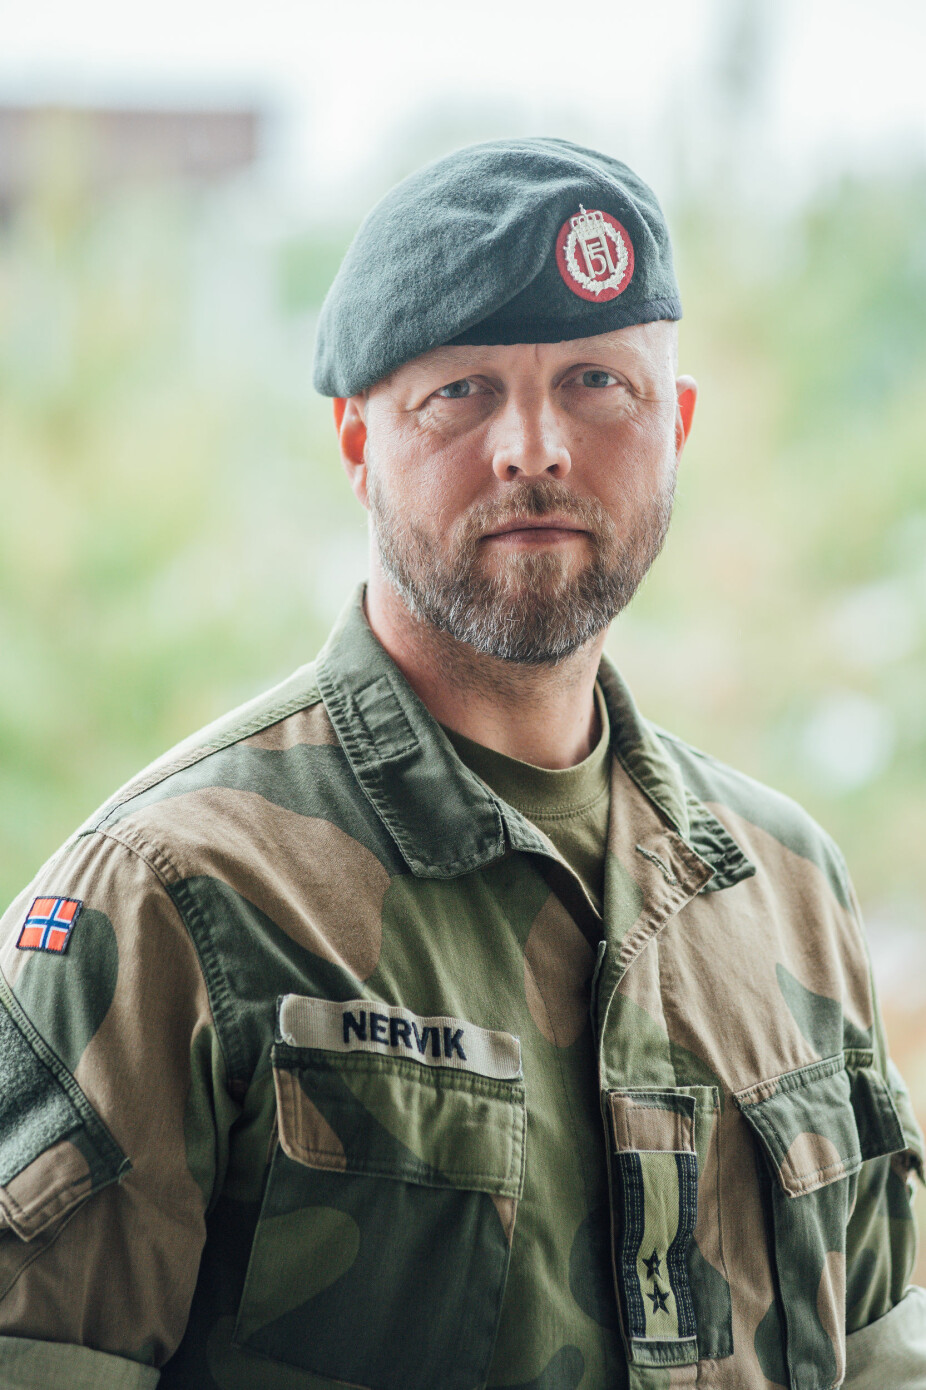 Kommunikasjonssjef i Hæren, oberstløytnant Erling Nervik.